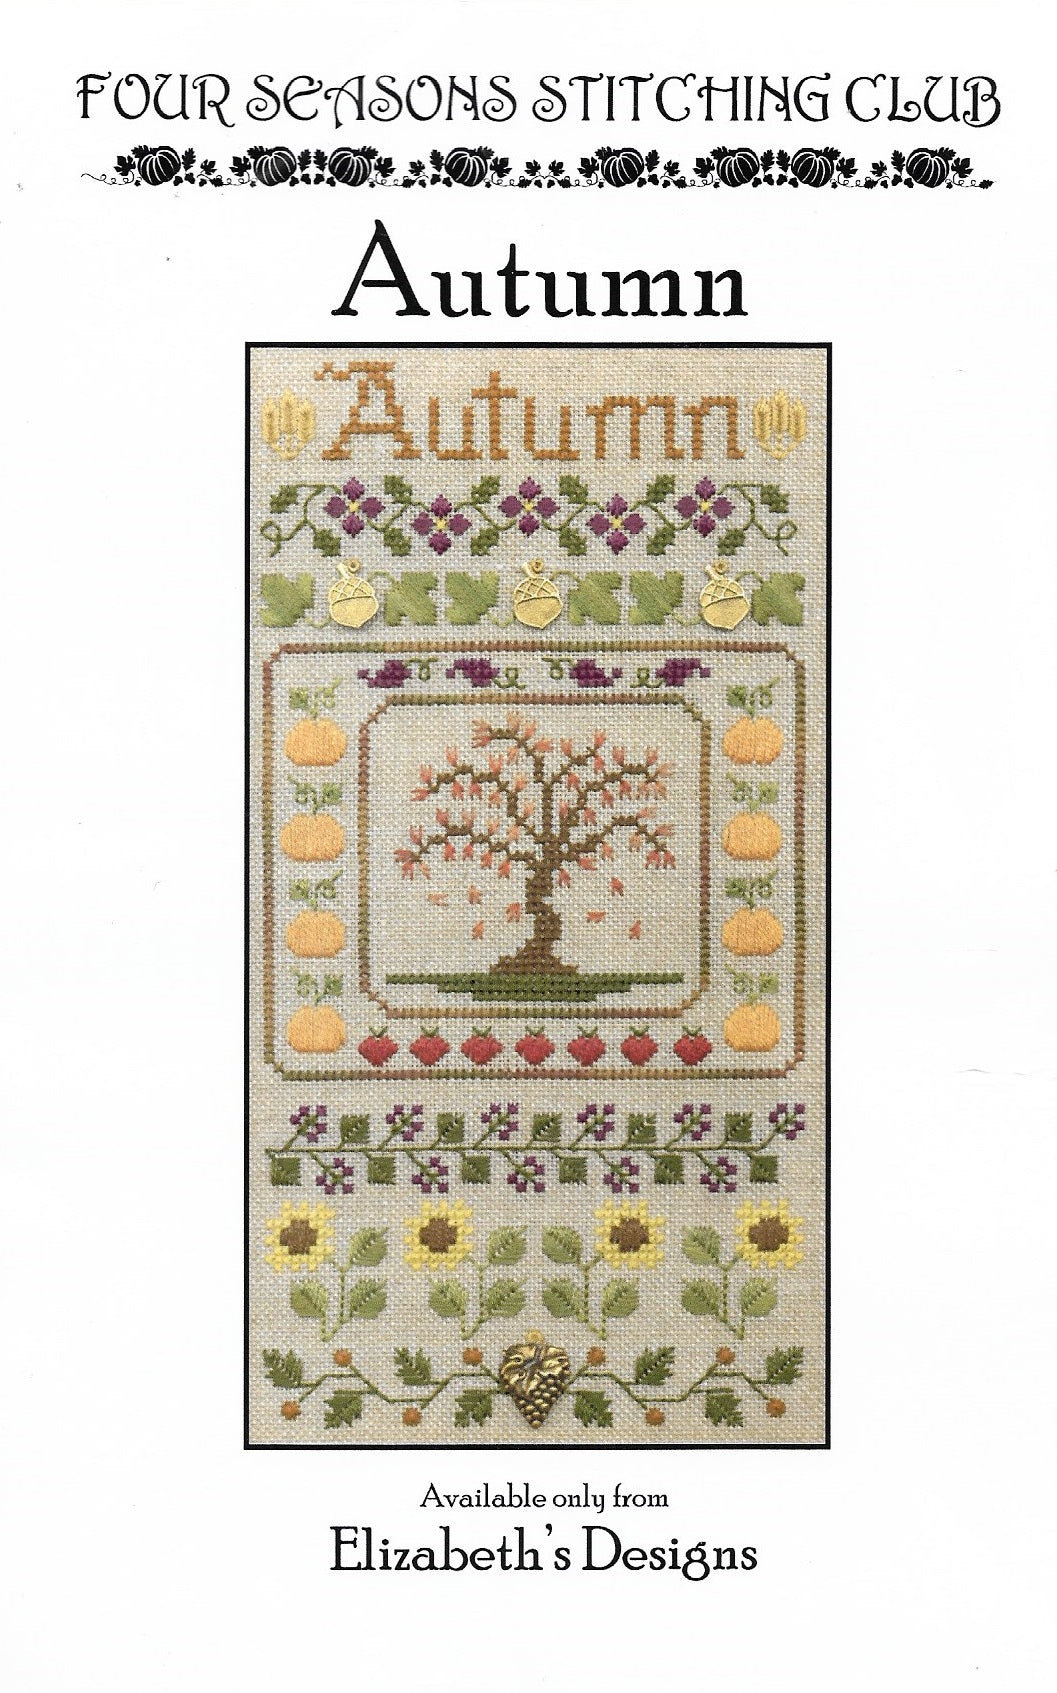 Elizabeth's Designs Autumn cross stitch pattern